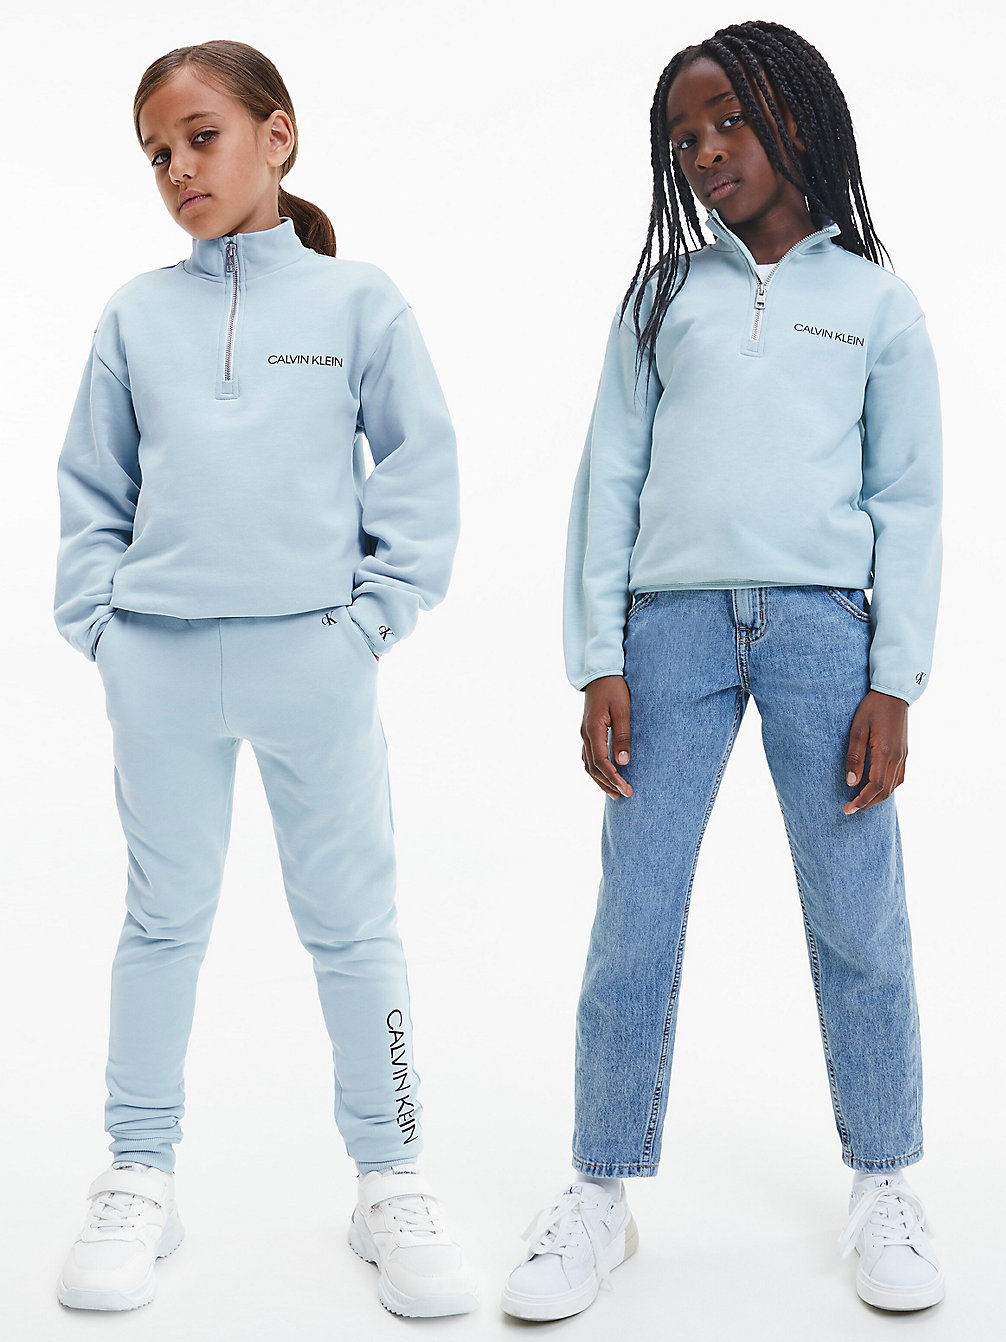 MUTED AQUA Unisex Relaxed Zip Neck Sweatshirt undefined kids unisex Calvin Klein